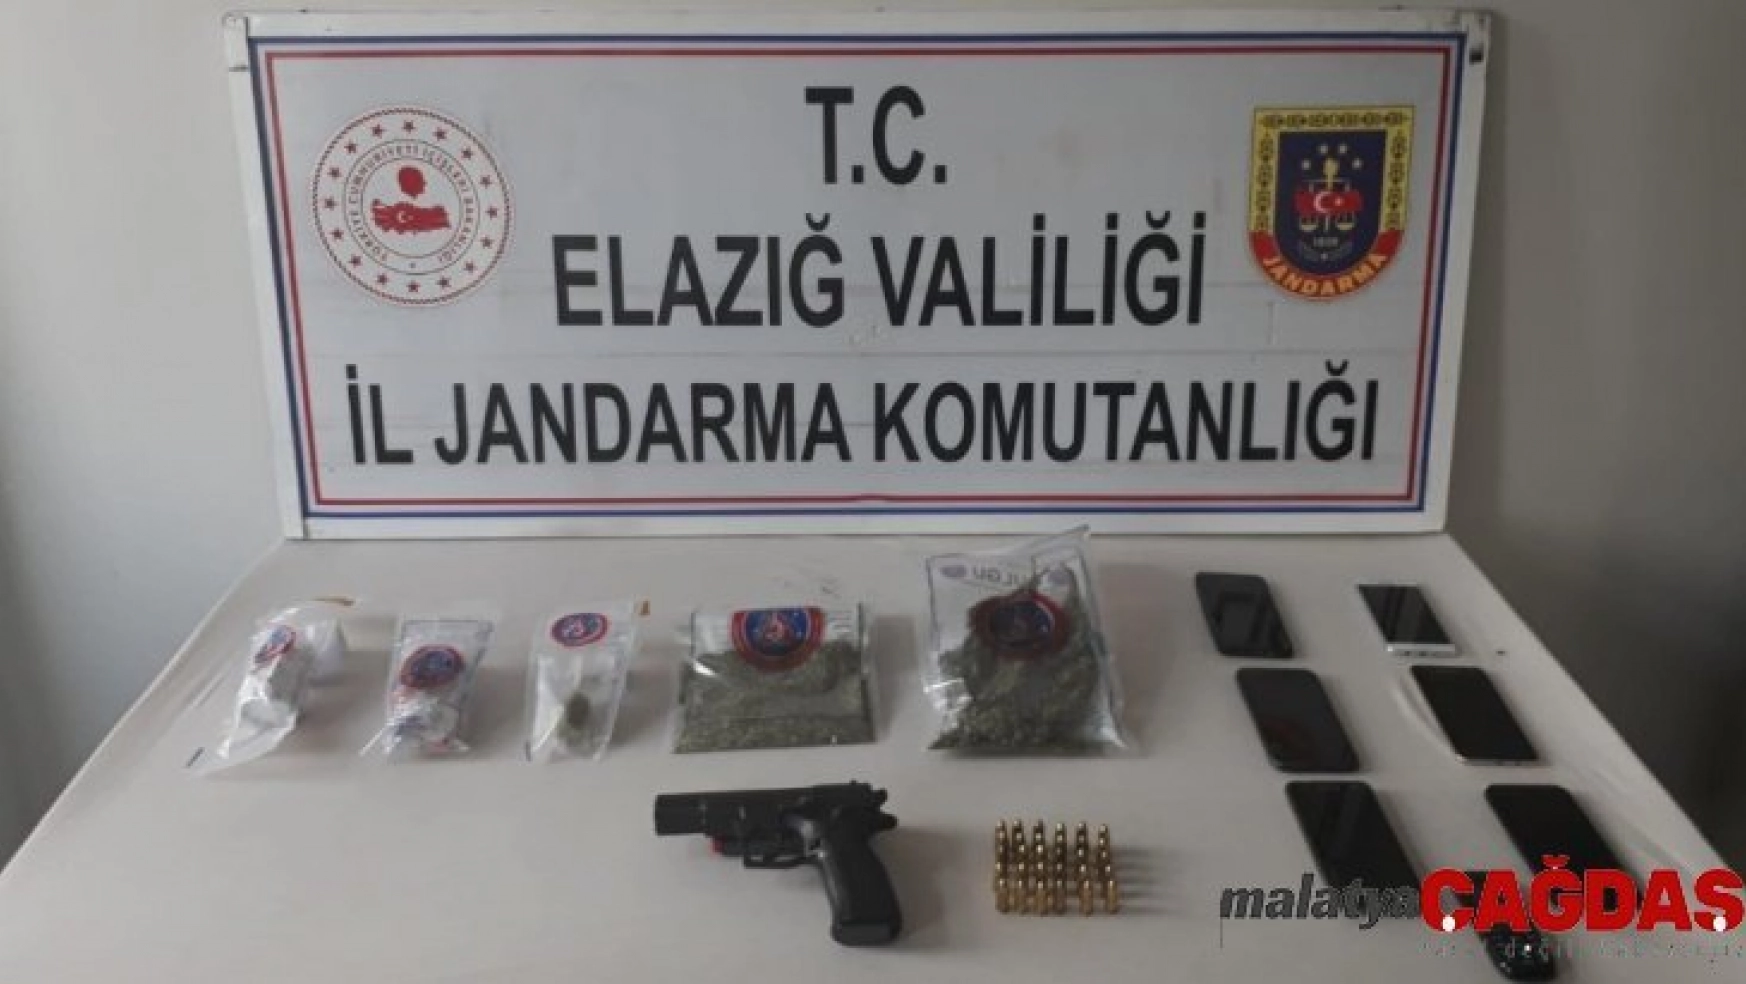 Elazığ merkezli 2 ilde uyuşturucu operasyonu: 6 tutuklama